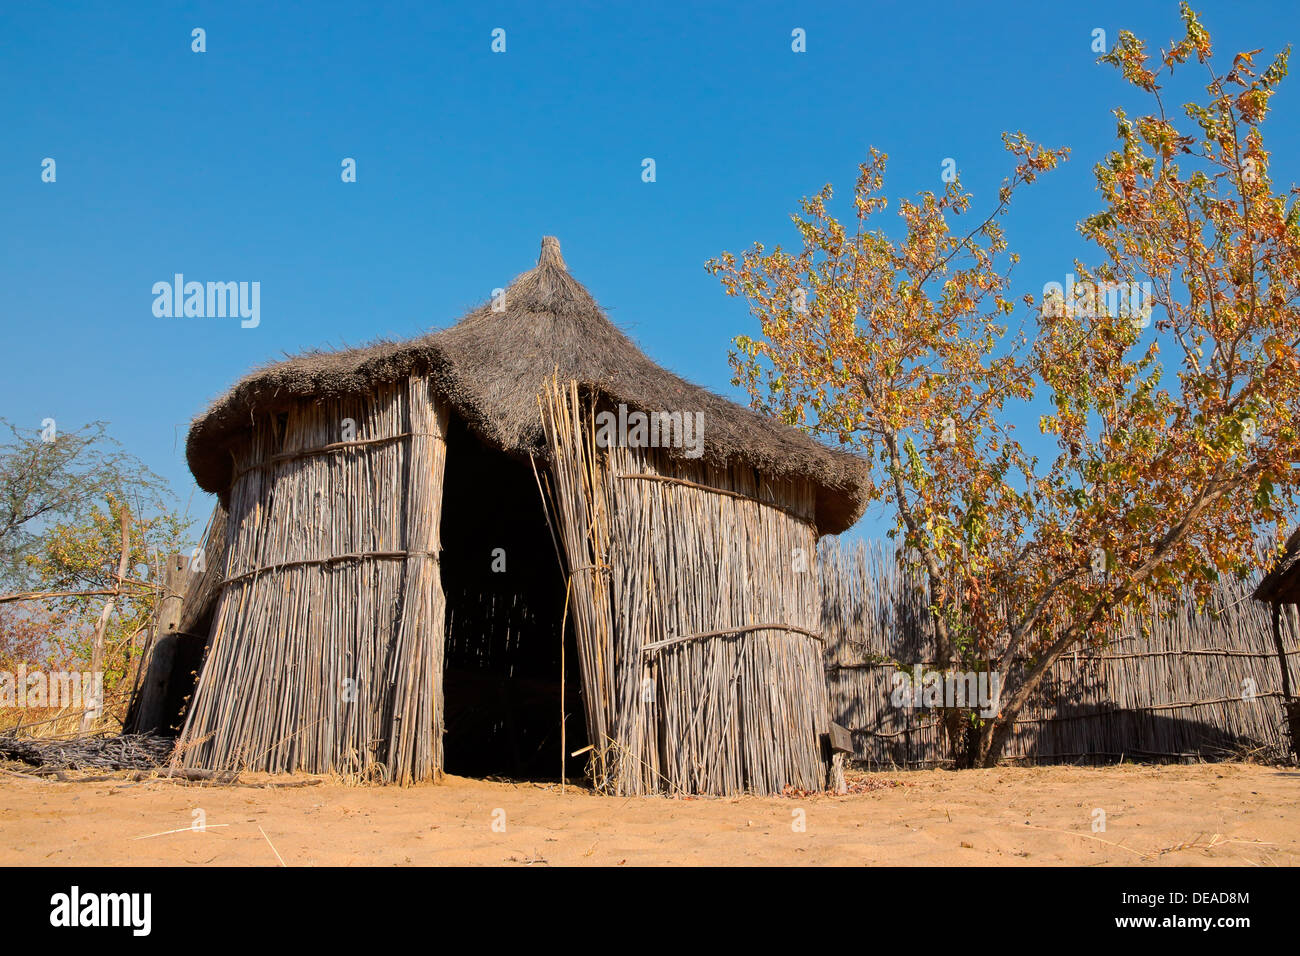 L'Afrique rurale traditionnelle reed et de chaume hut, dans la région de Caprivi, en Namibie Banque D'Images